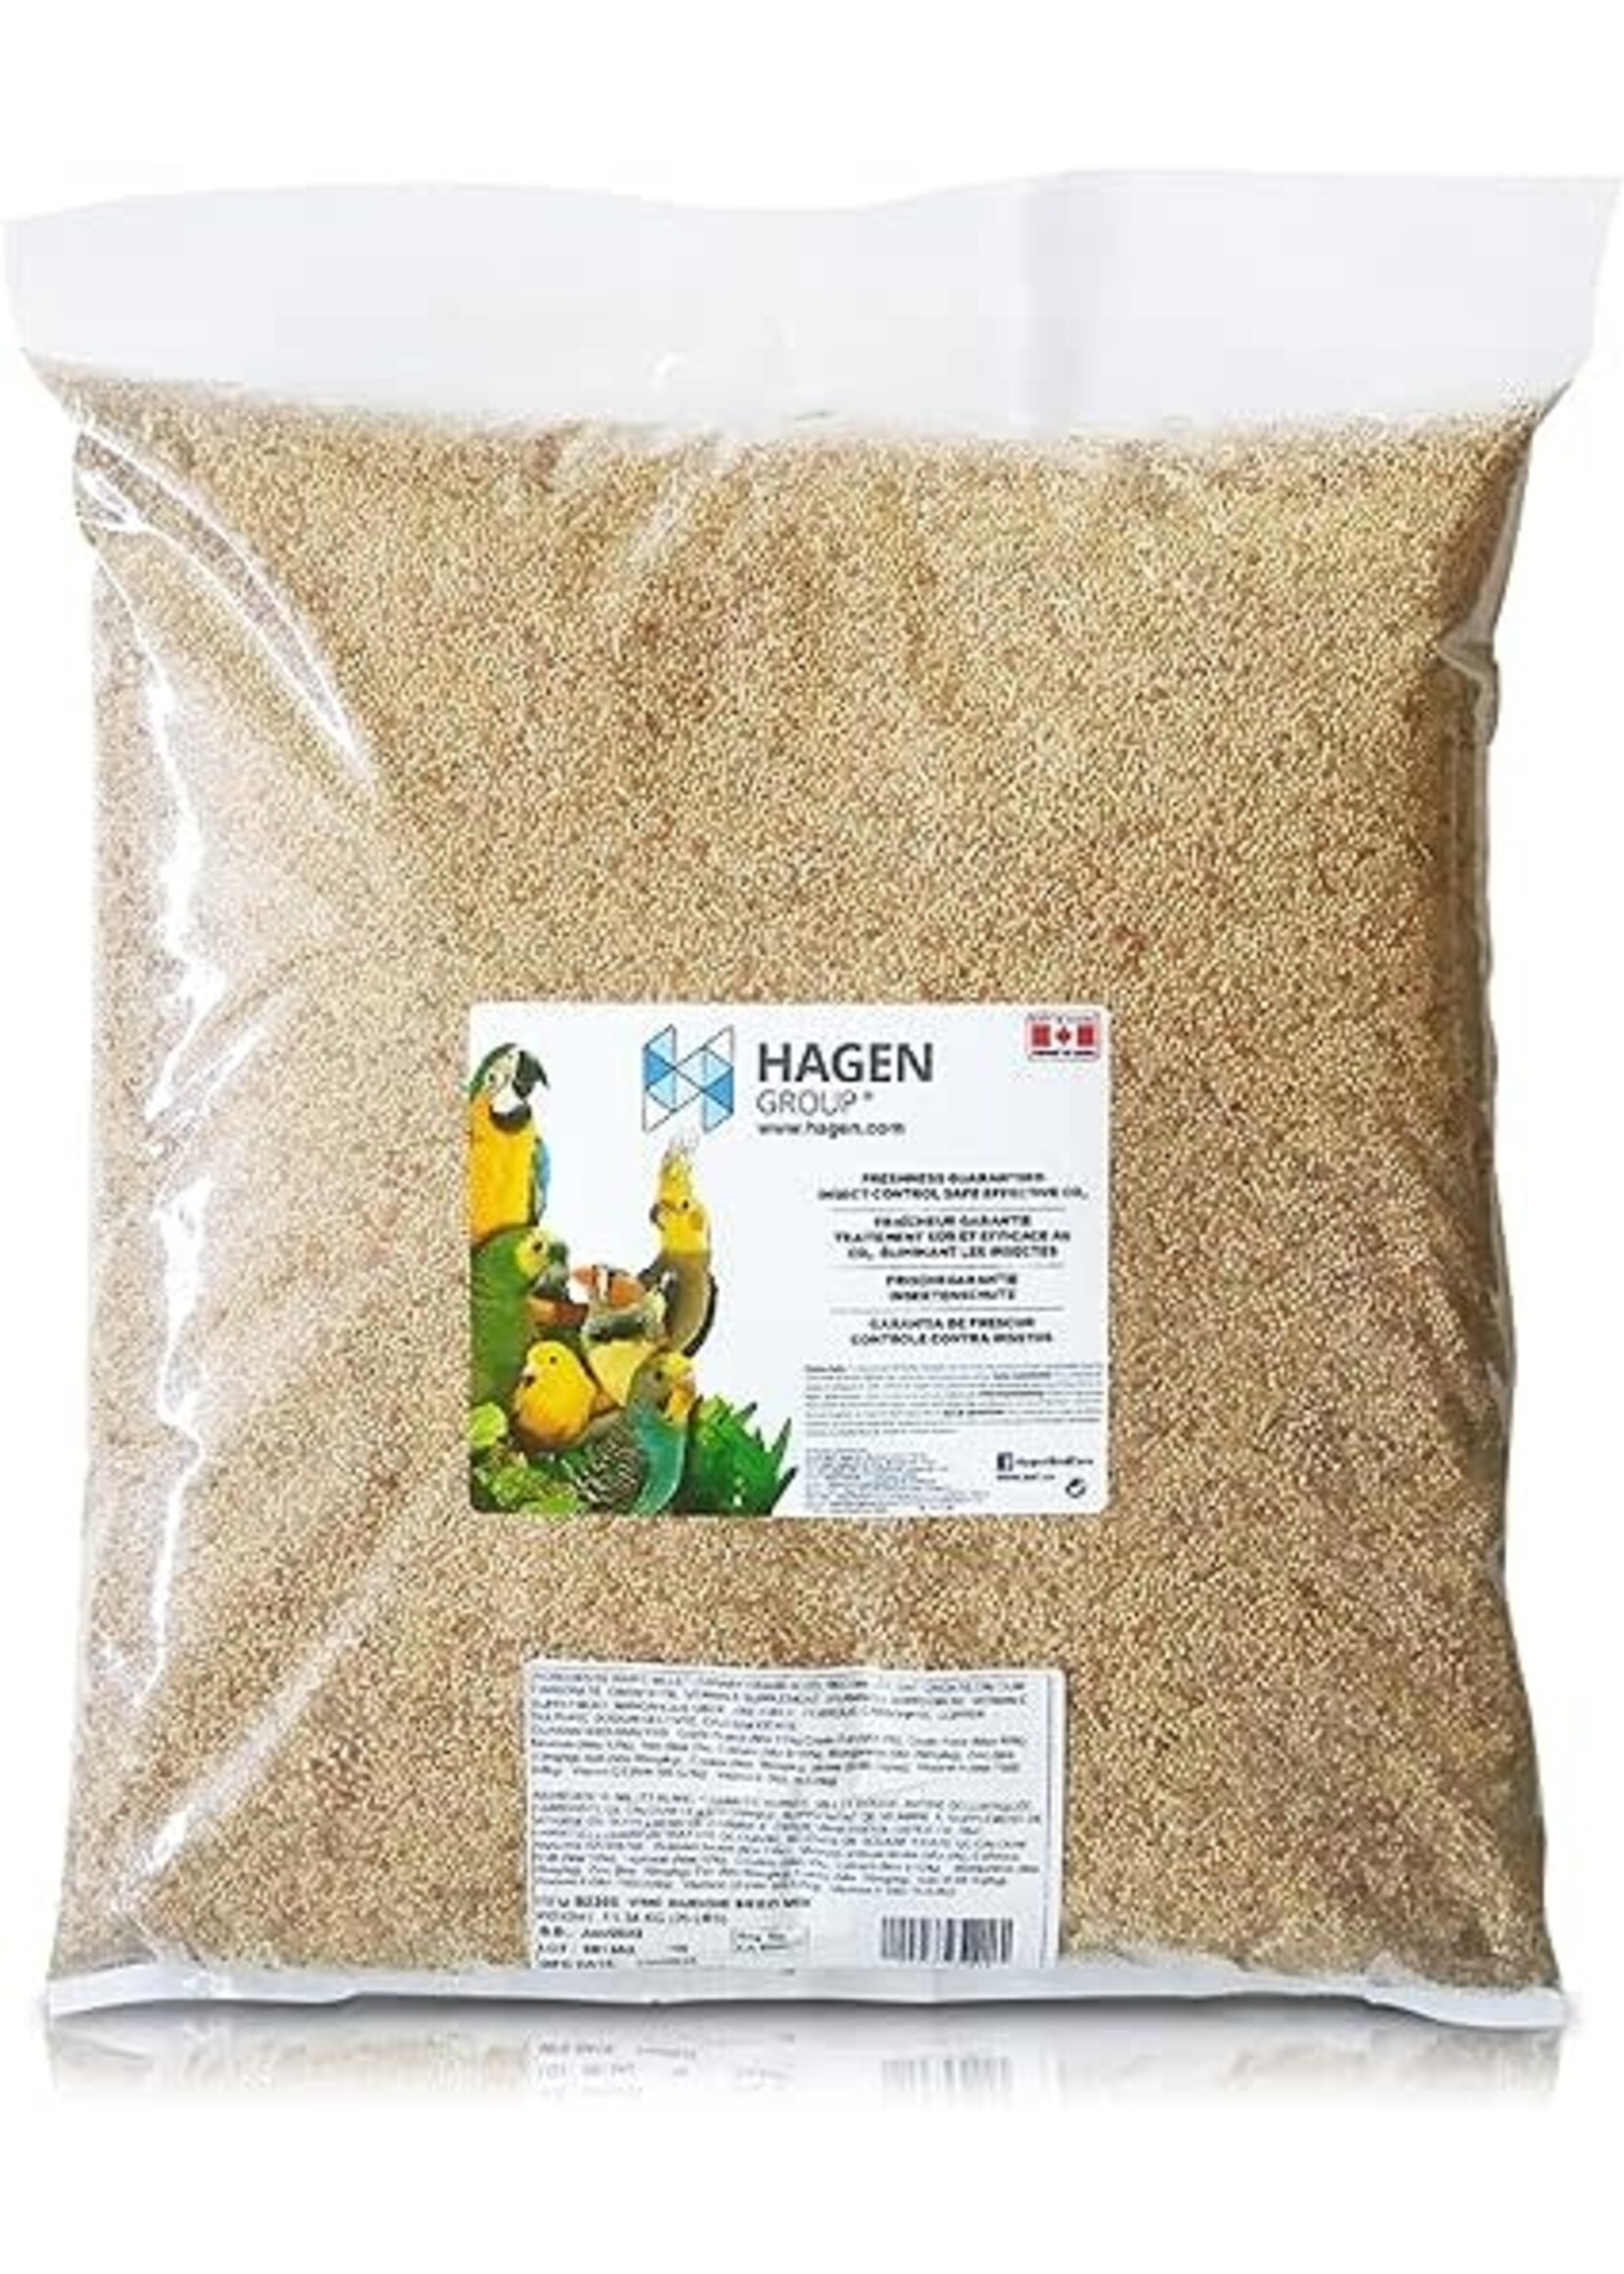 Hagen Hagen Budgie Staple VME Seed (25lb)